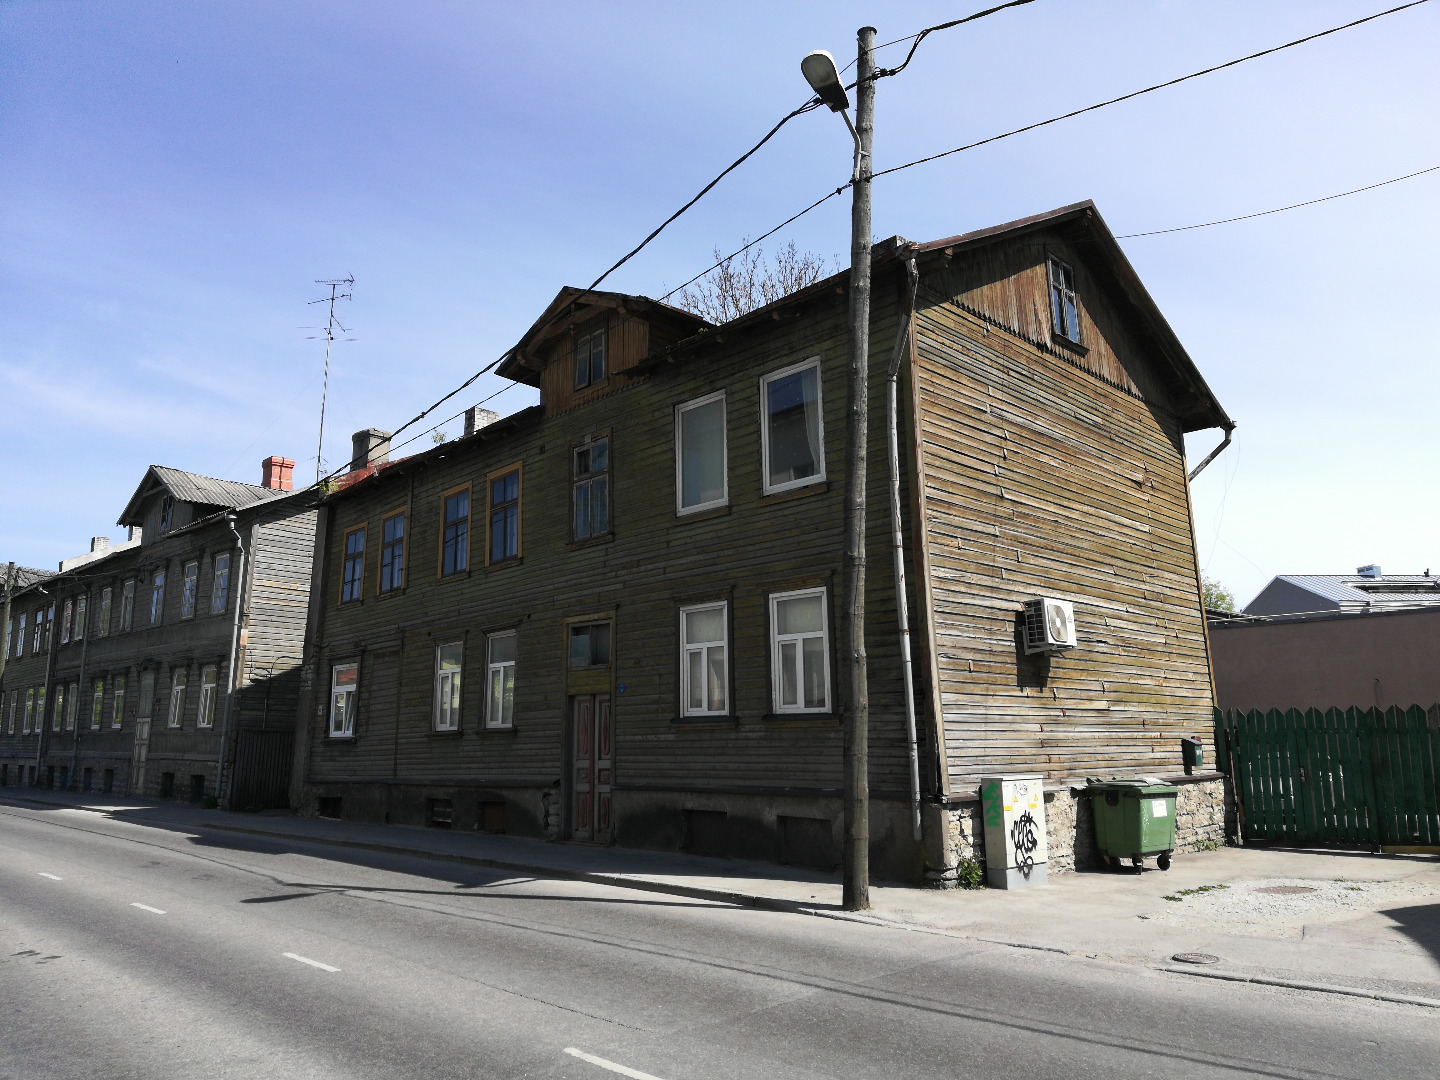 Building on Telliskivi Street in Tallinn rephoto